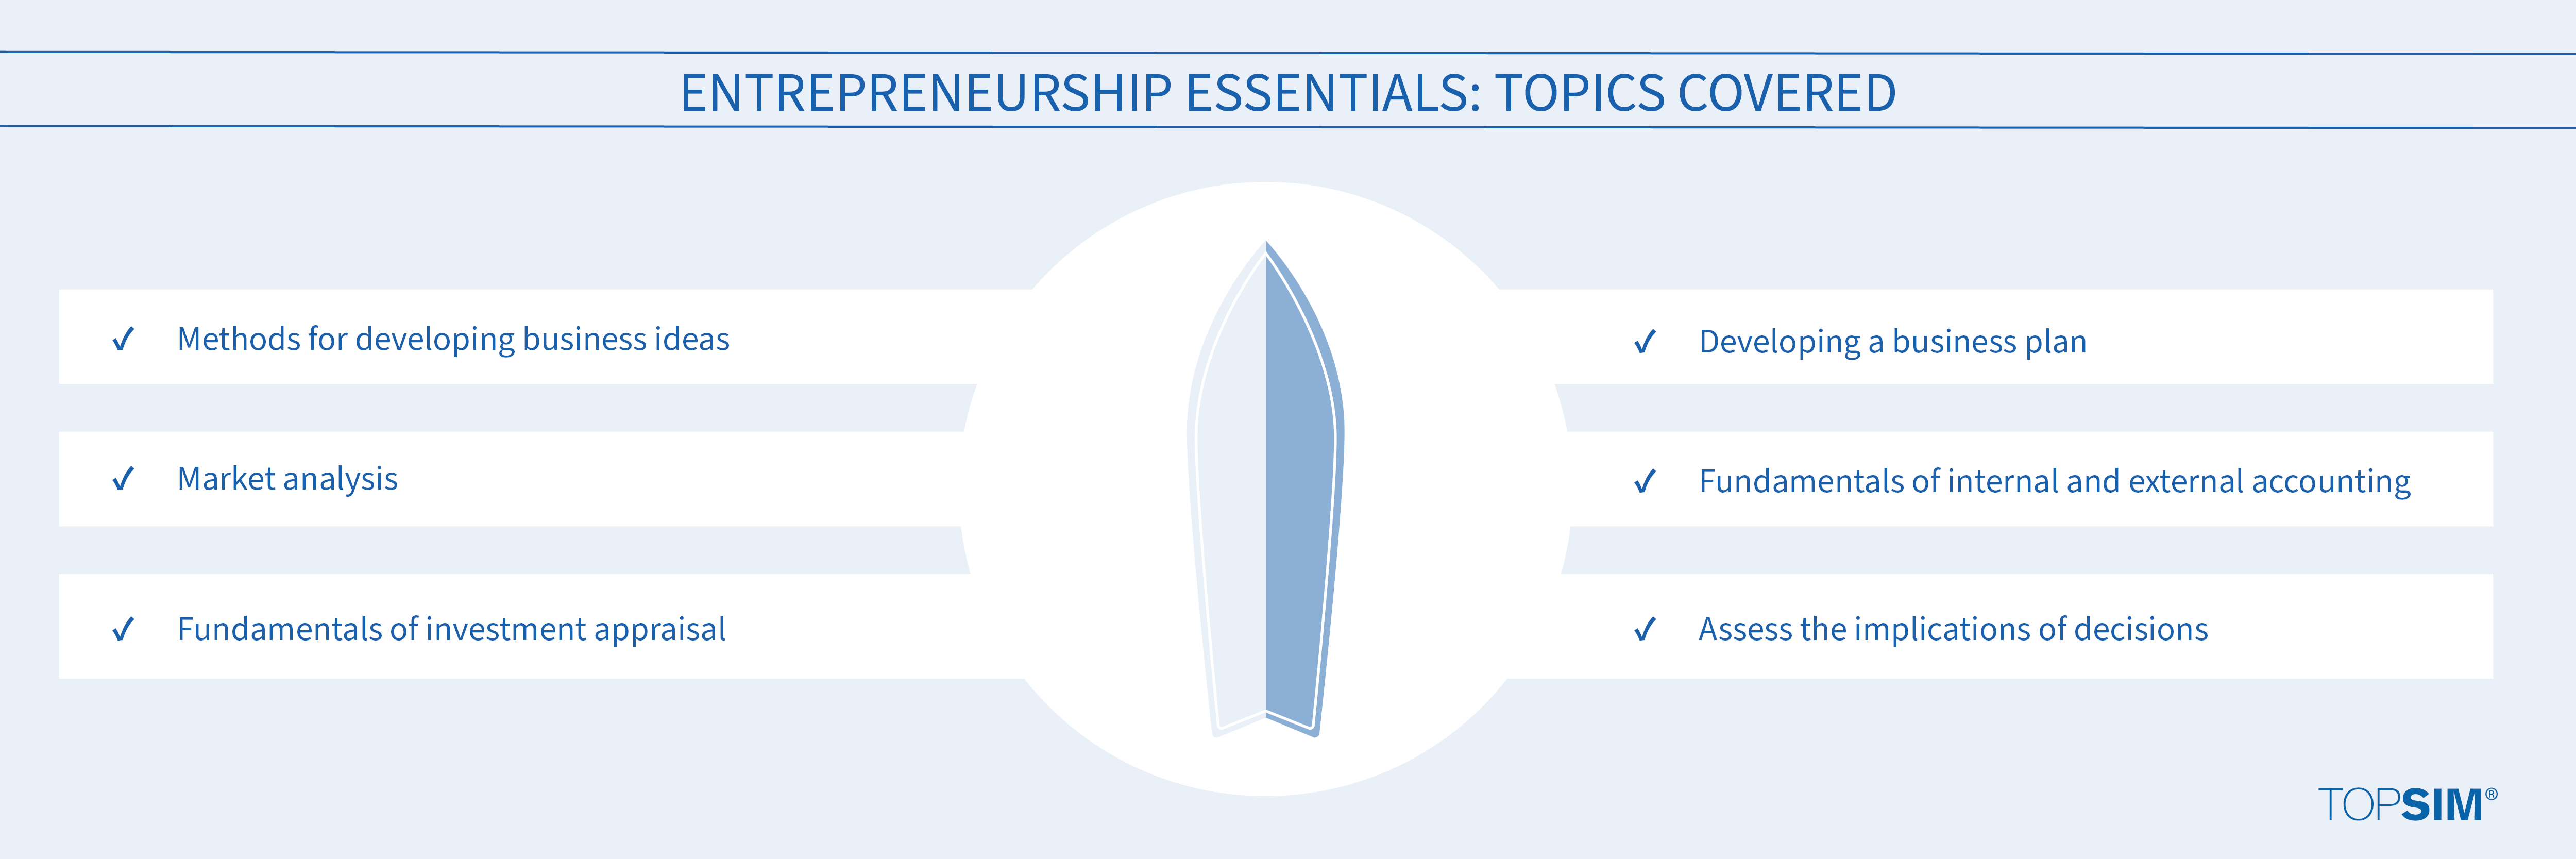 Topics covered: Entrepreneurship Essentials